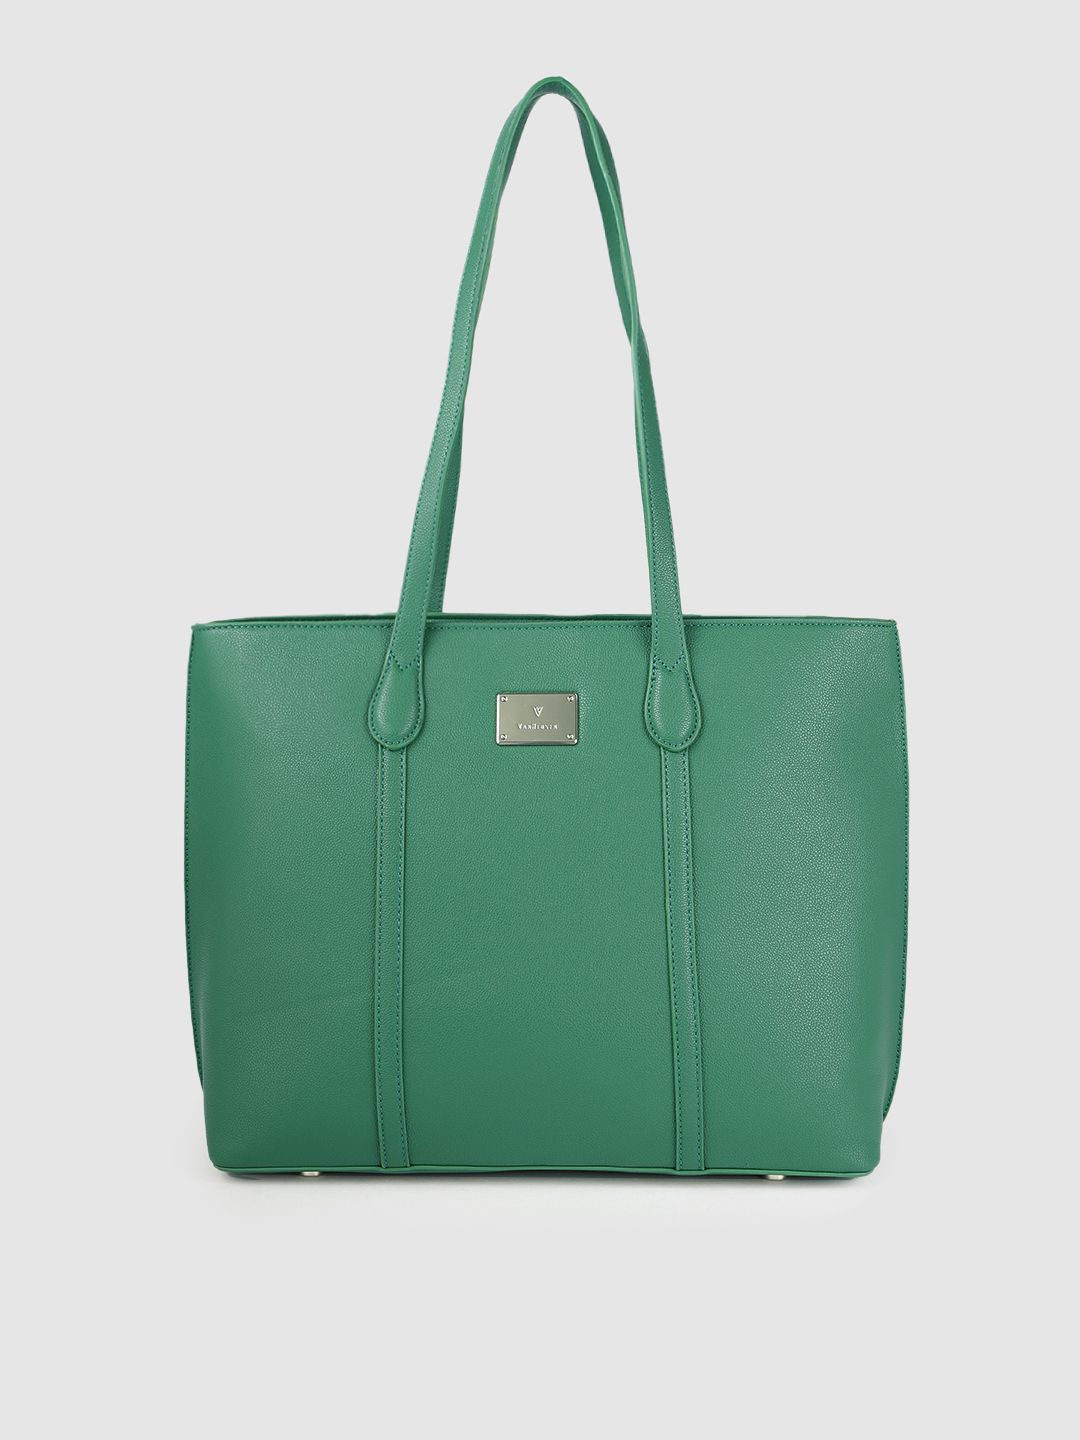 Van Heusen Green Solid Shoulder Bag Price in India